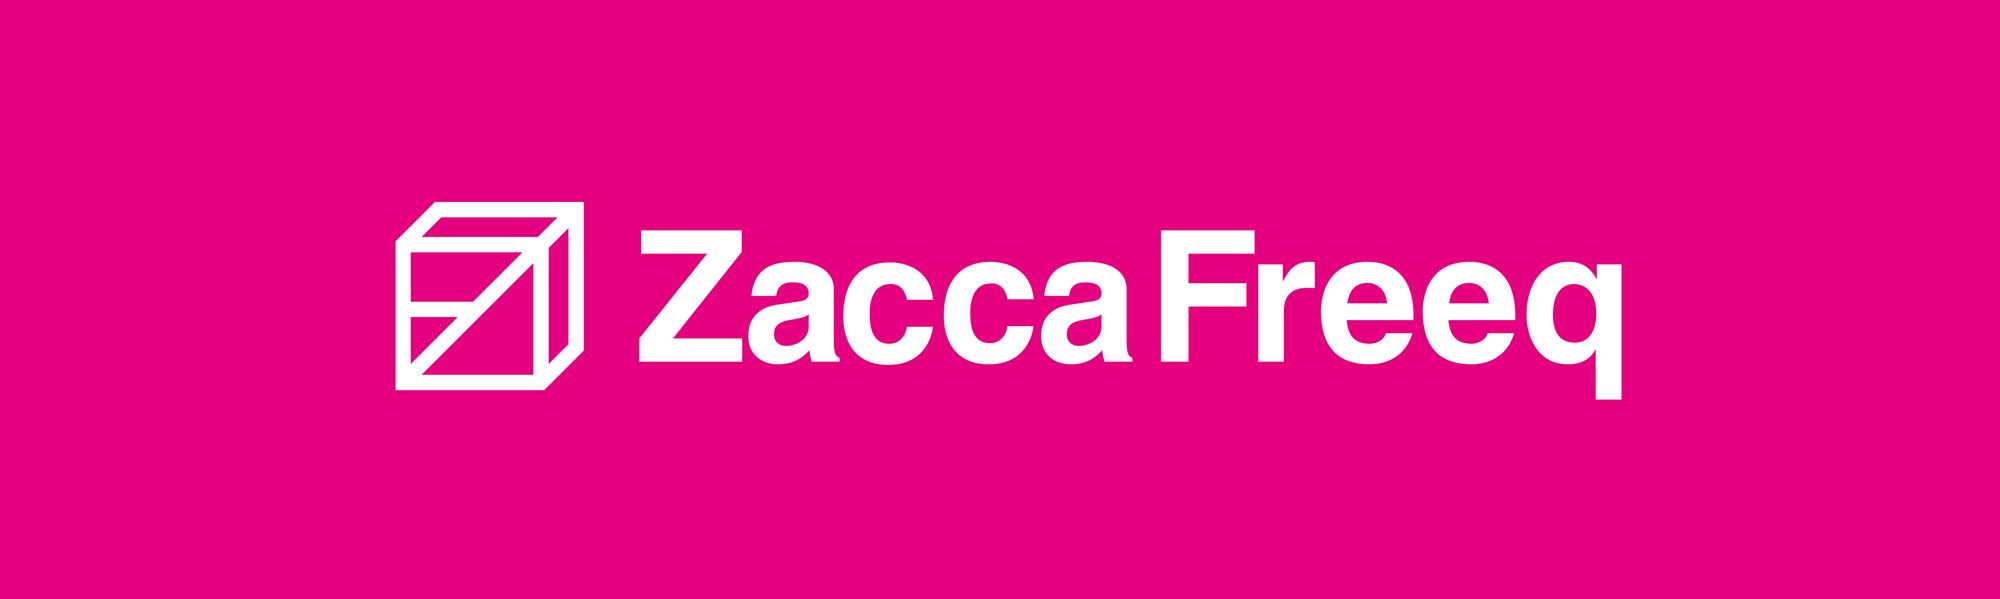 ZaccaFreeq